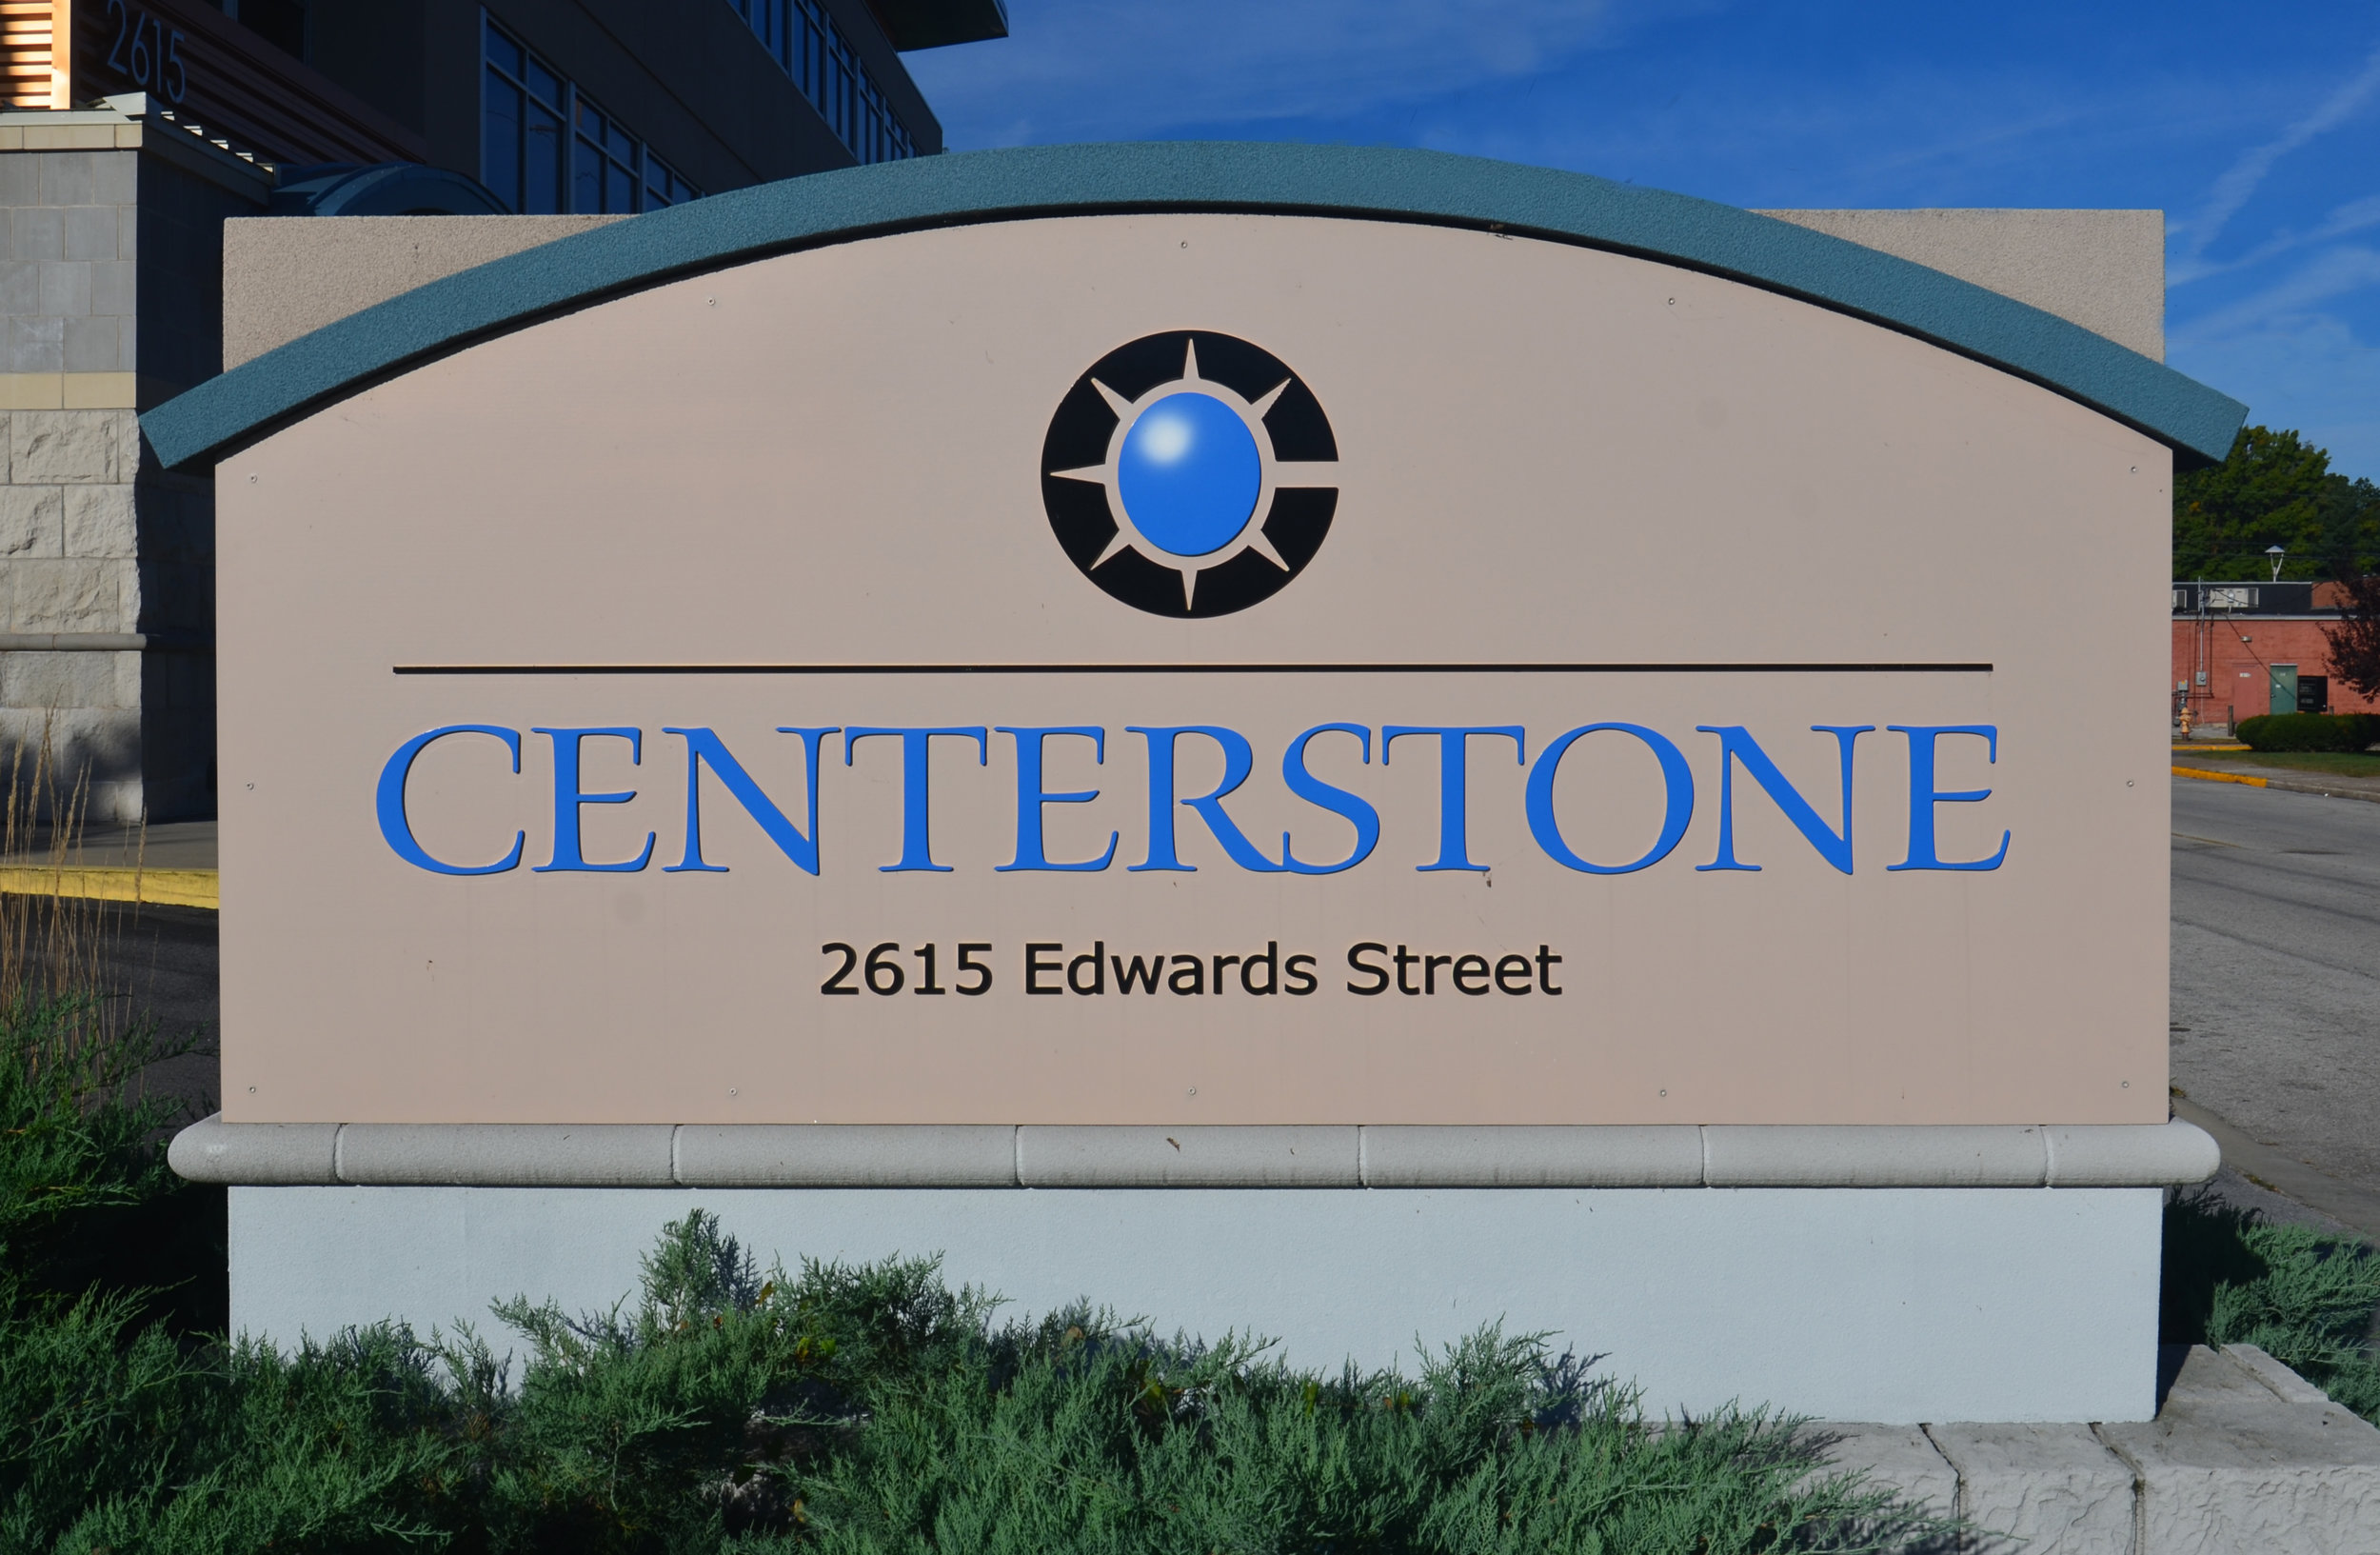 Centerstone HQ